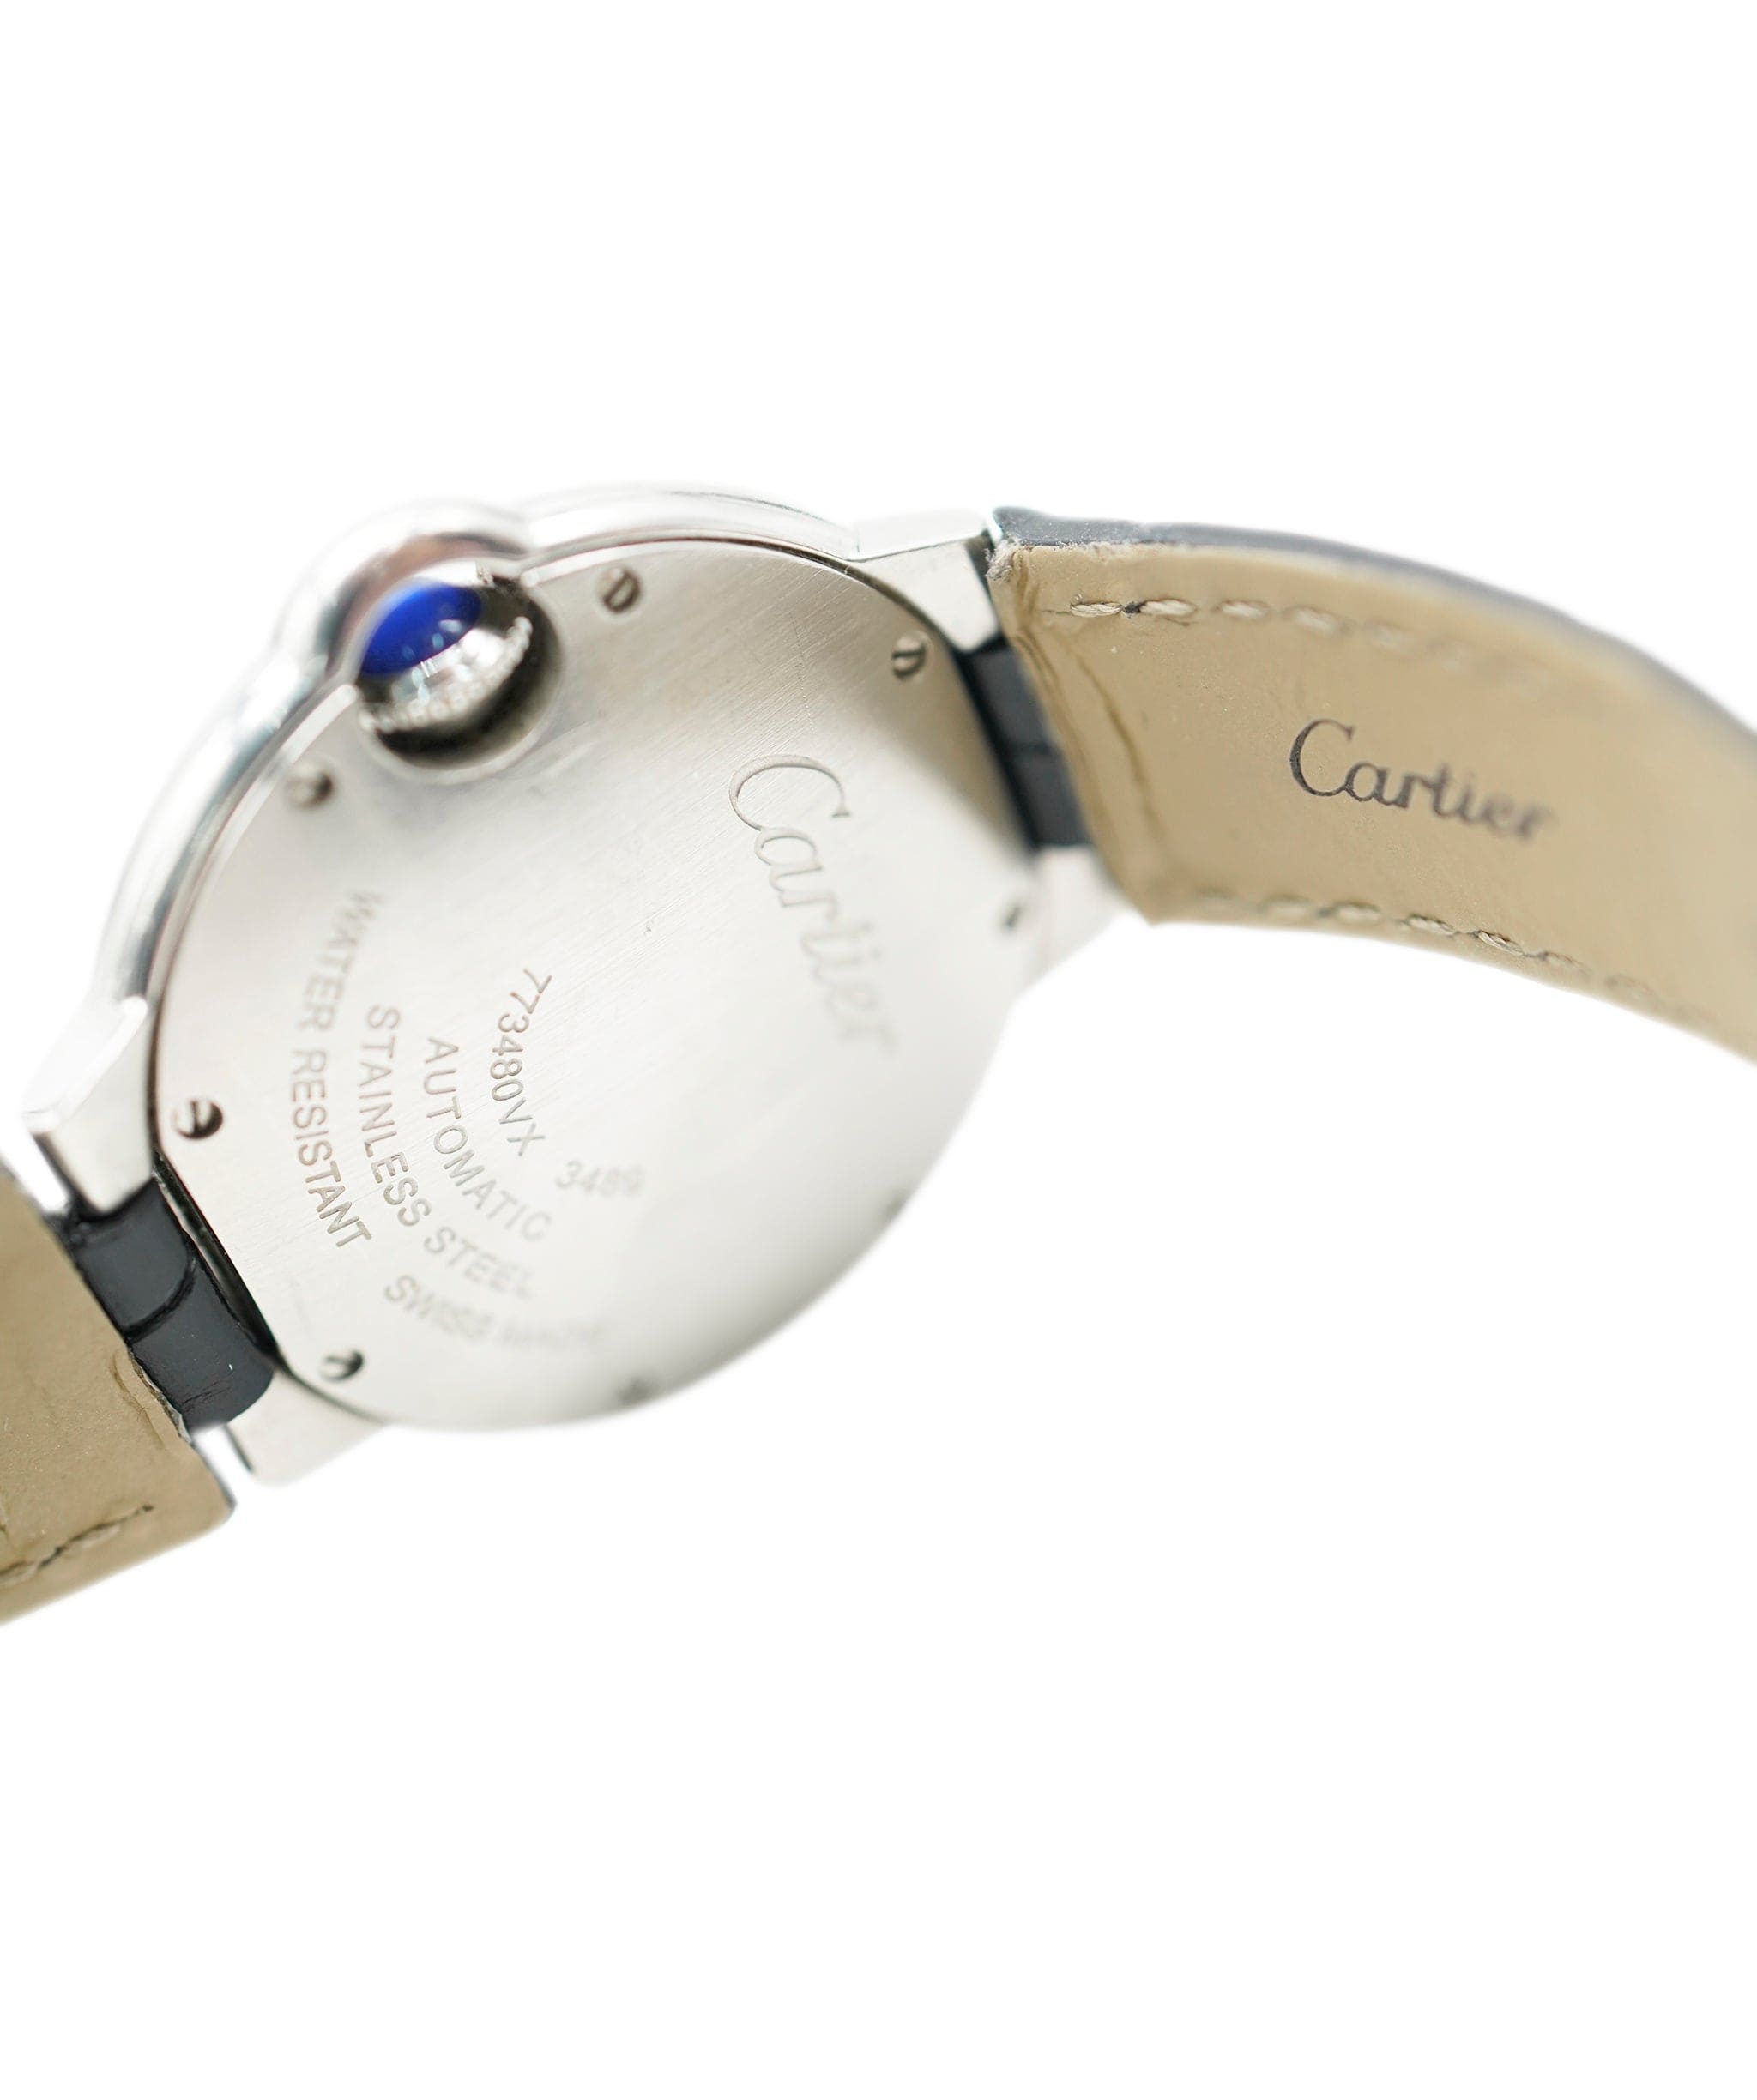 Cartier Cartier watch AHC1460